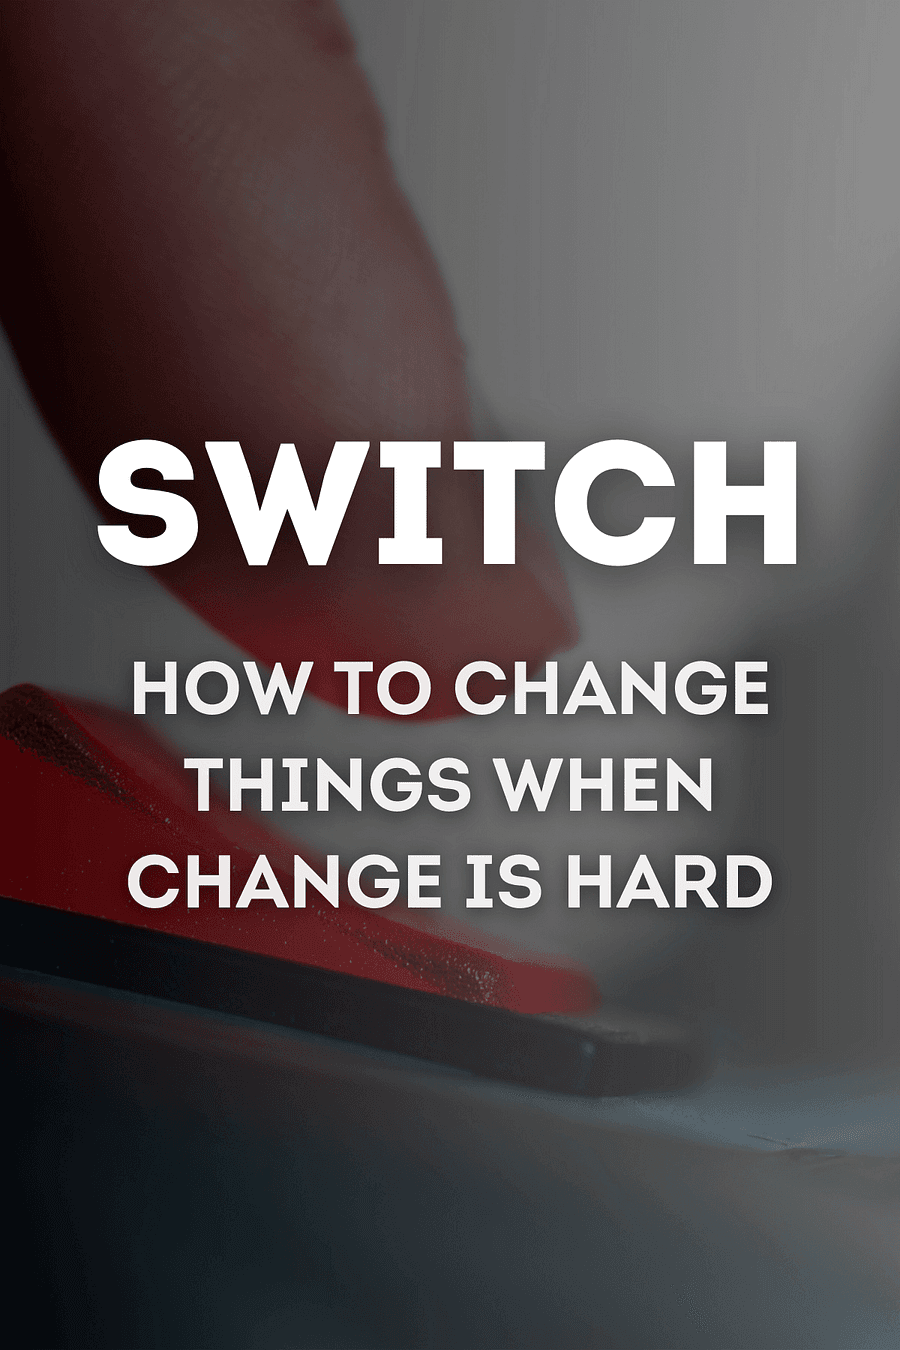 Switch by Chip Heath, Dan Heath - Book Summary